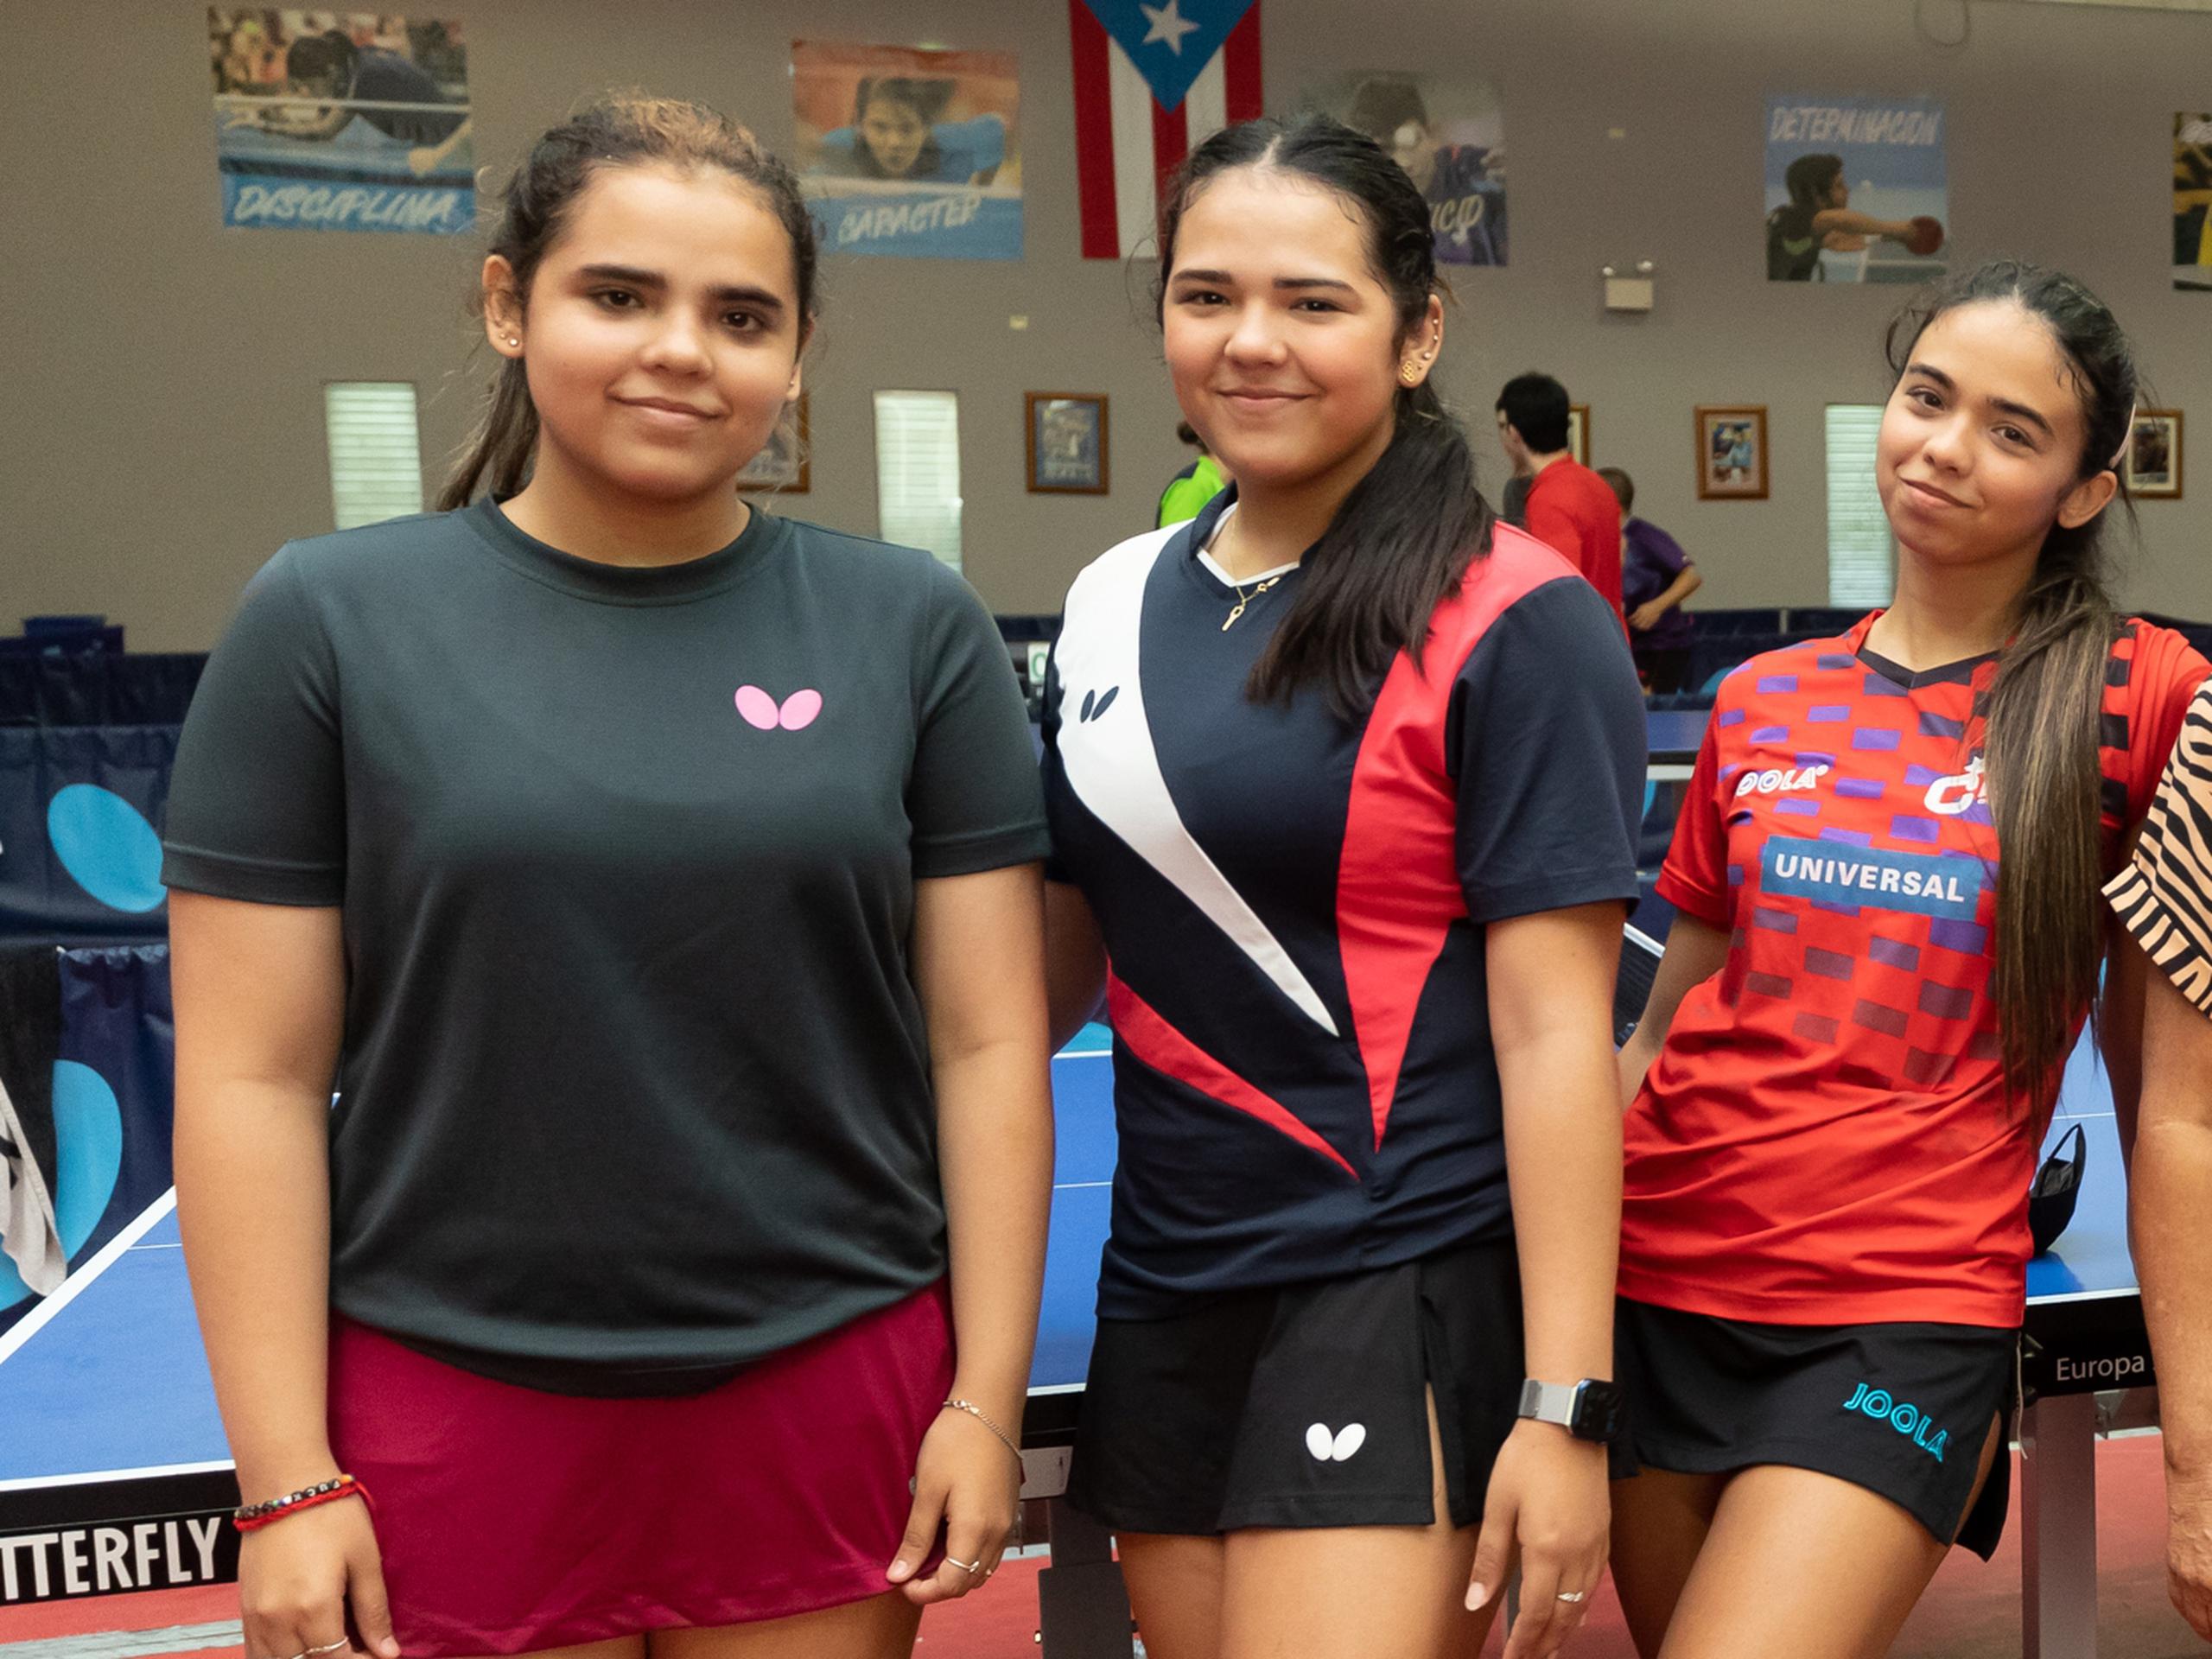 Primera desde la izquierda, Fabiola Díaz jugará con las Spinners de Seattle en la Major League Table Tennis, y se une a sus hermanas Adriana y Melanie como jugadora en ligas profesionales.